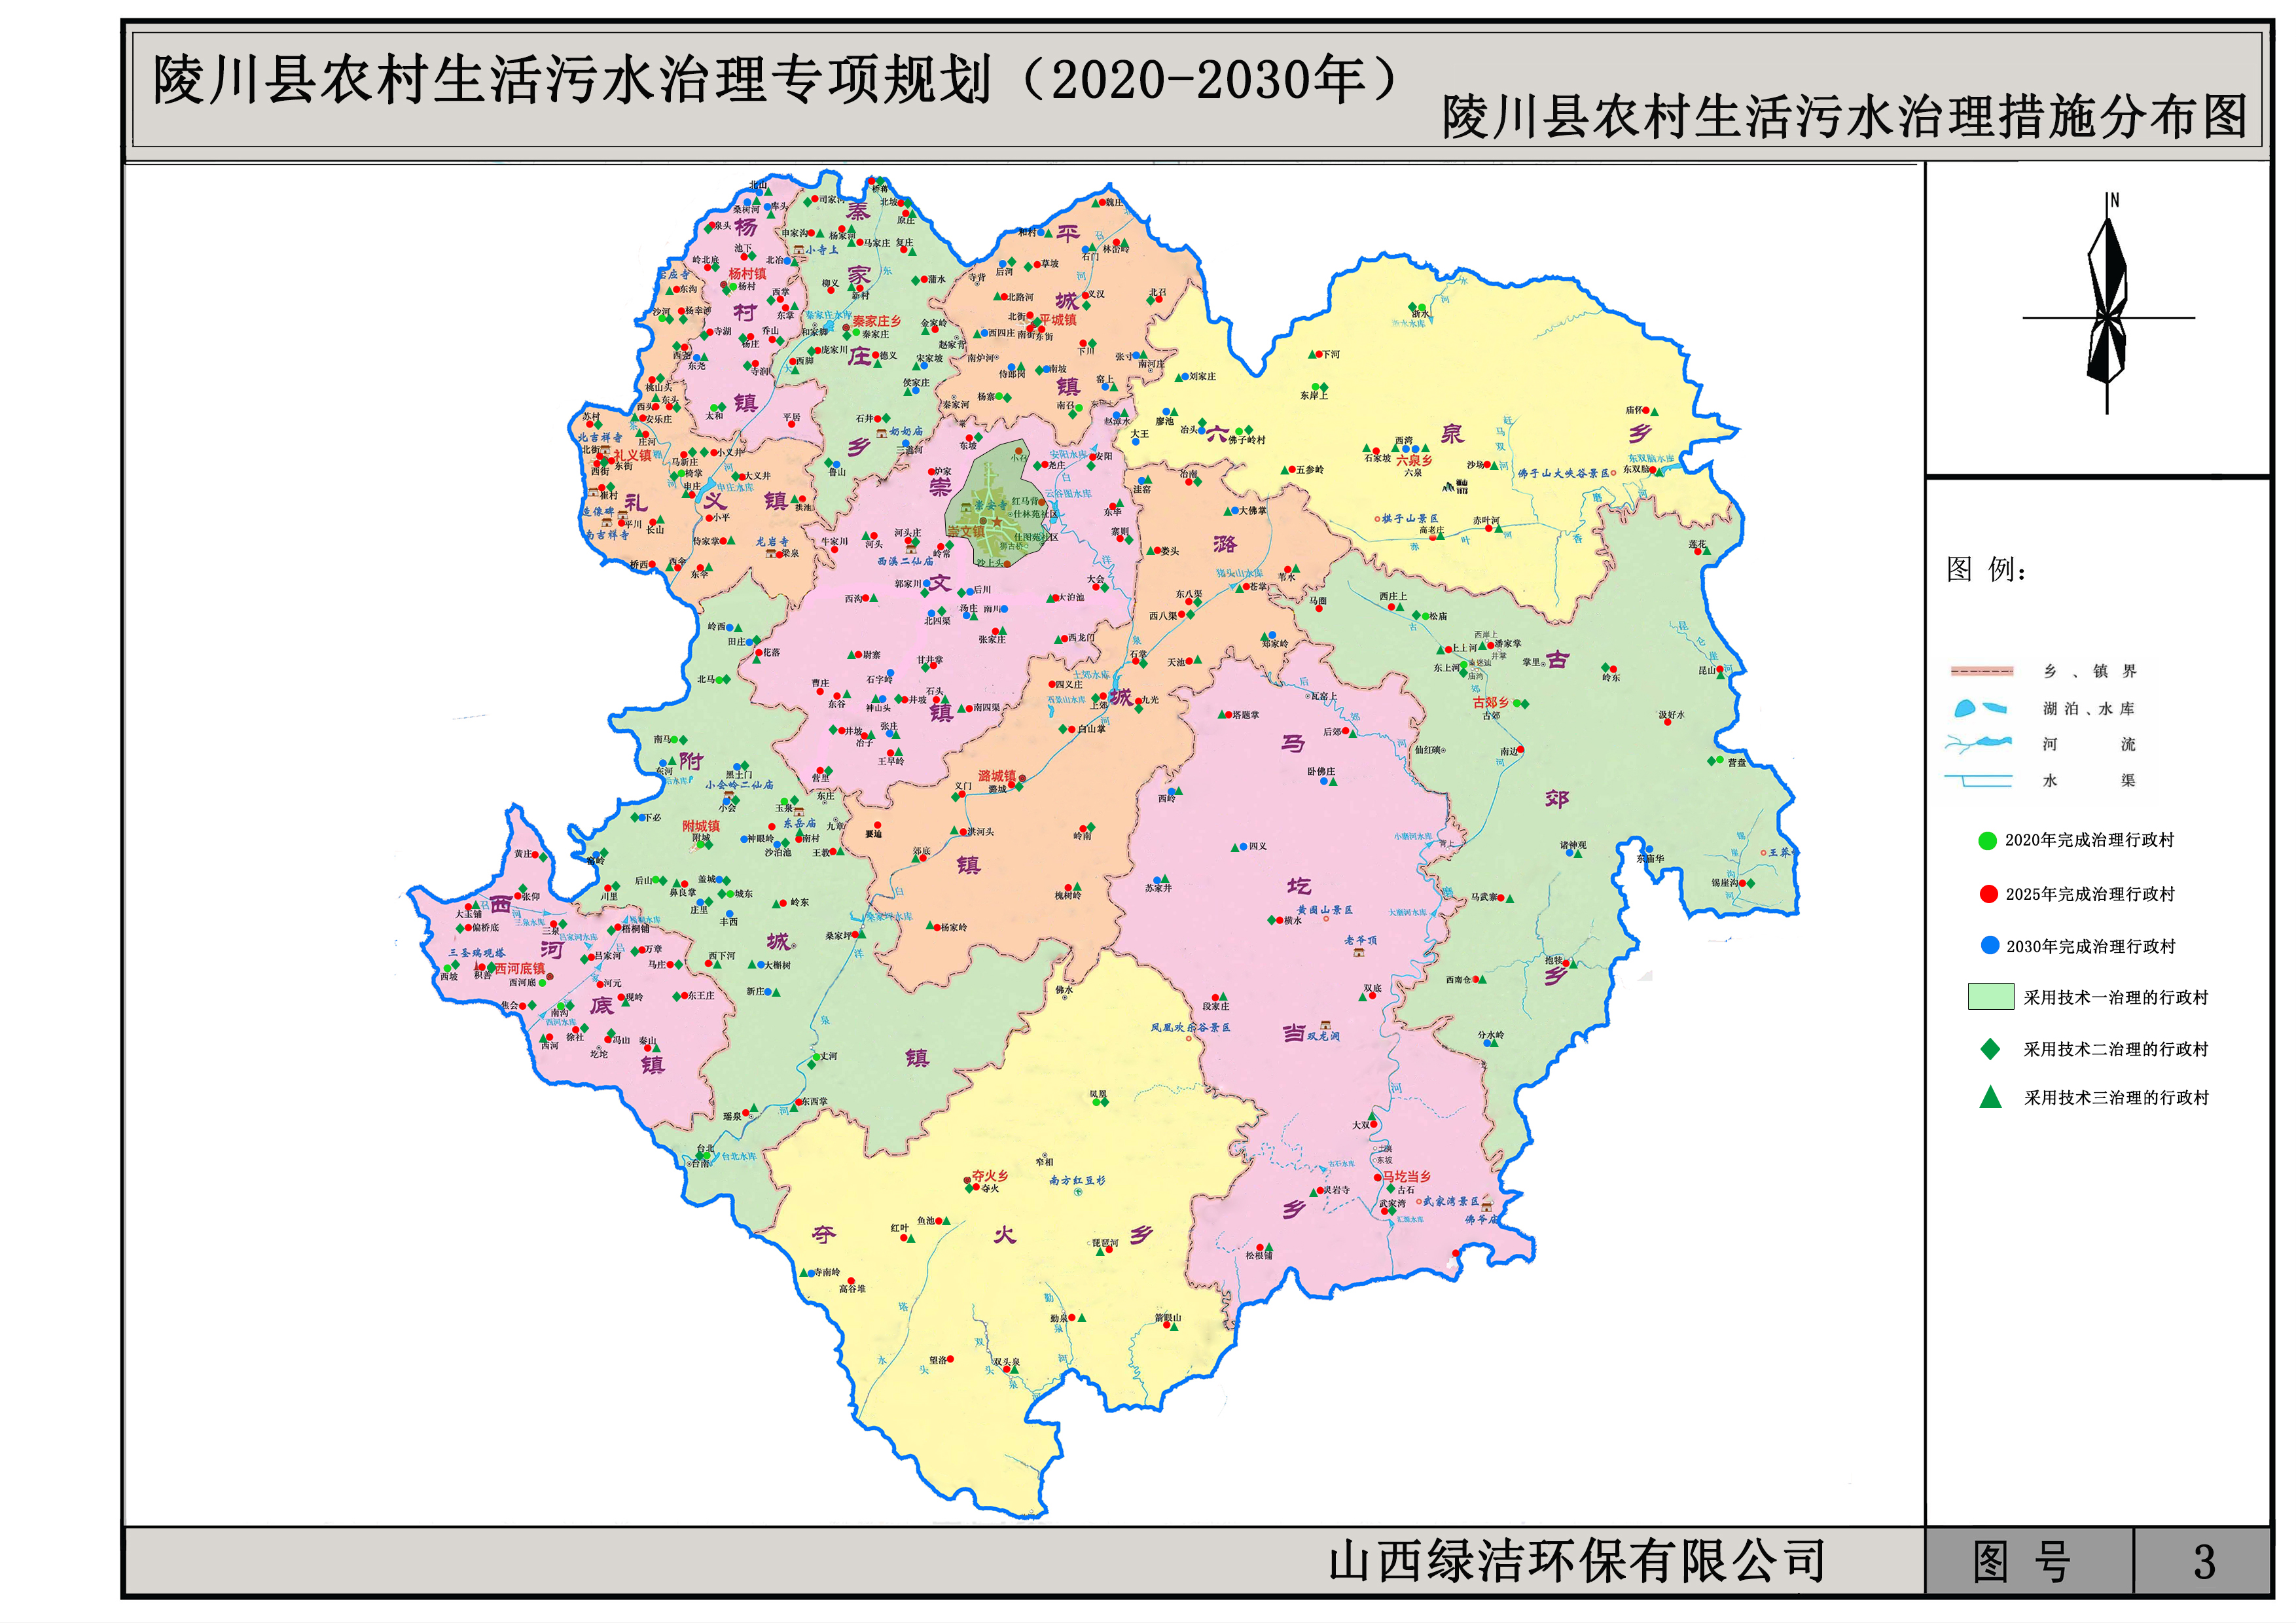 陵川新区规划图片